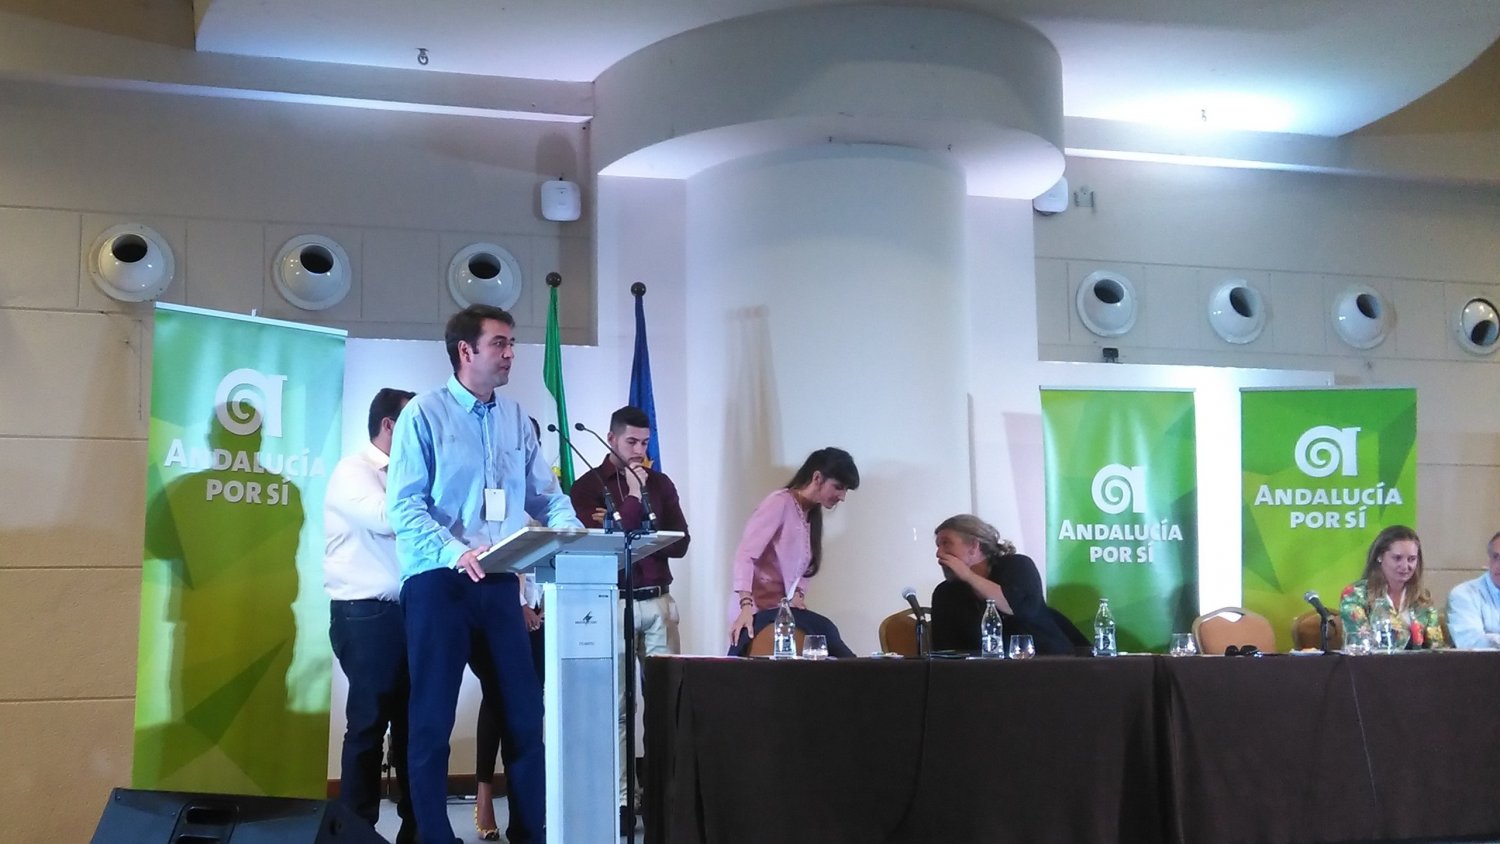 Andalucía por Sí: “El empleo y las políticas sociales son la médula de la acción de AxSí”